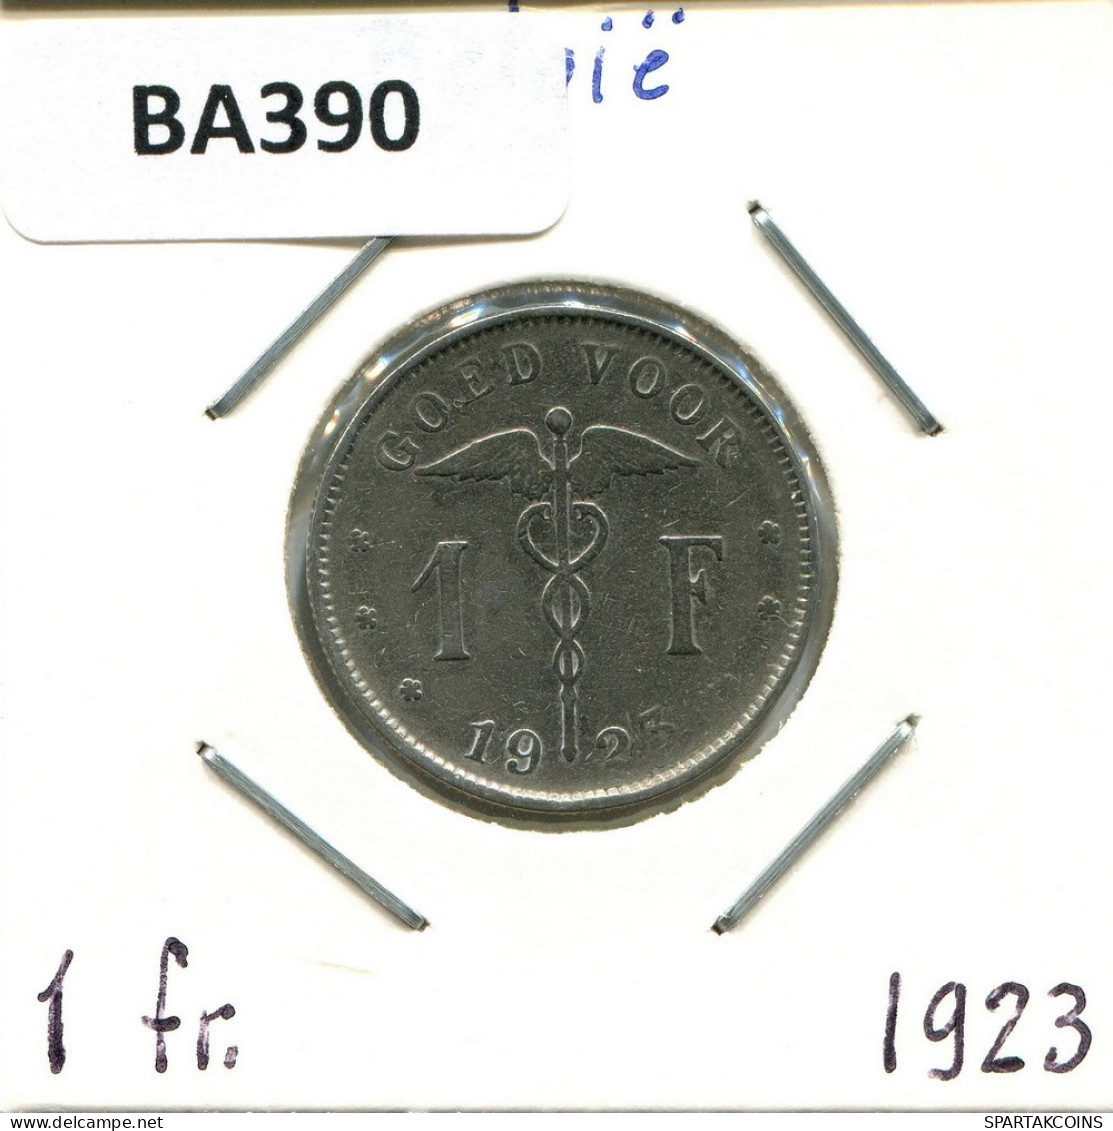 1 FRANC 1923 BELGIUM Coin DUTCH Text #BA390.U.A - 1 Frank